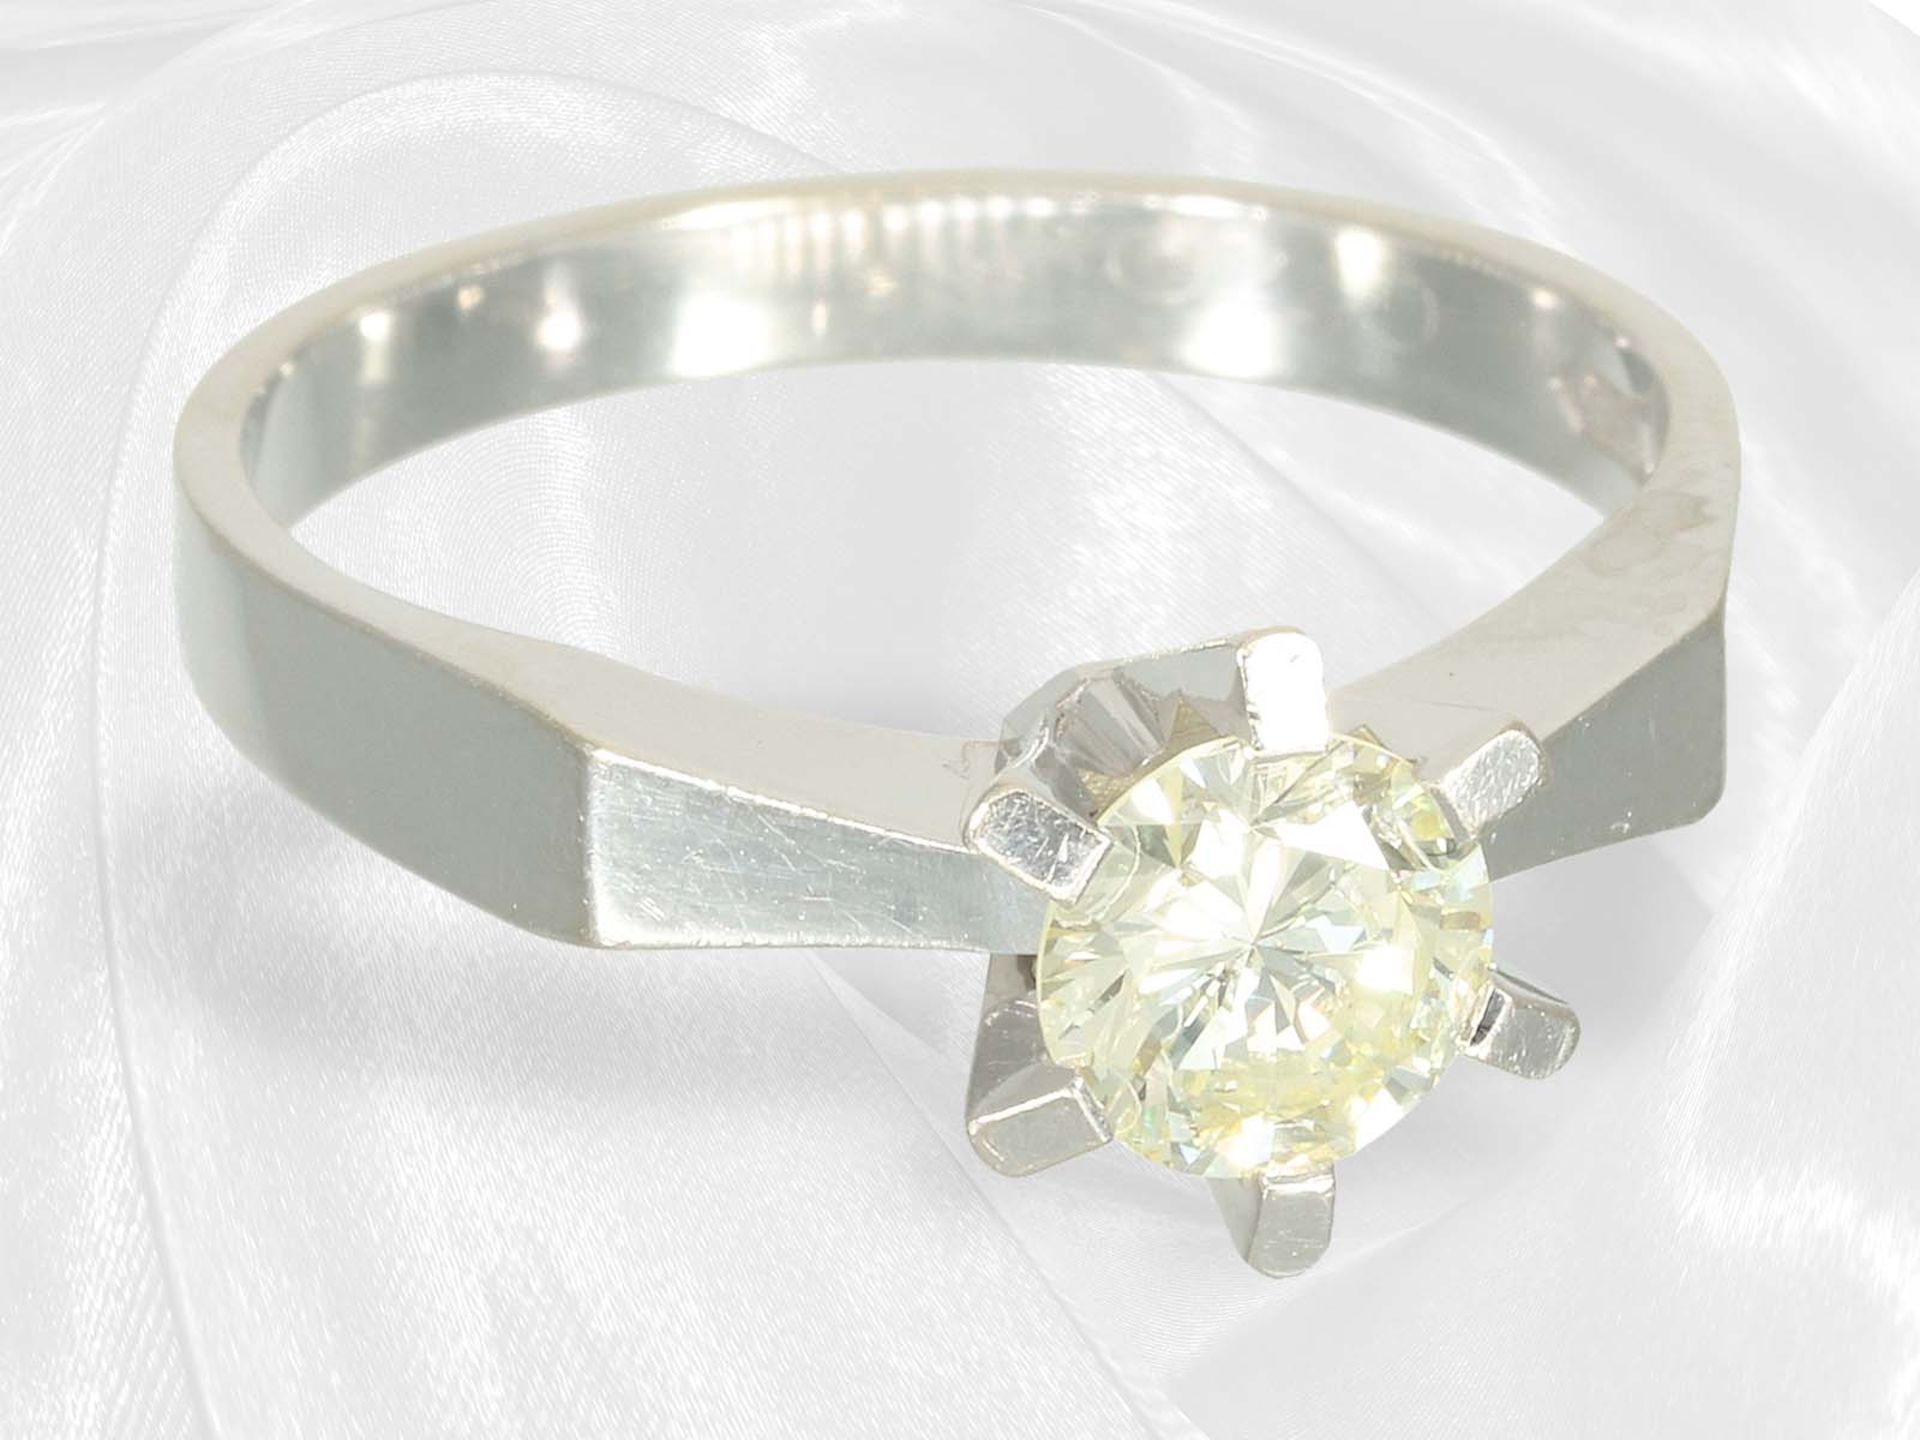 Vintage solitaire brilliant-cut diamond goldsmith ring, approx. 0.7ct brilliant-cut diamond - Image 3 of 4